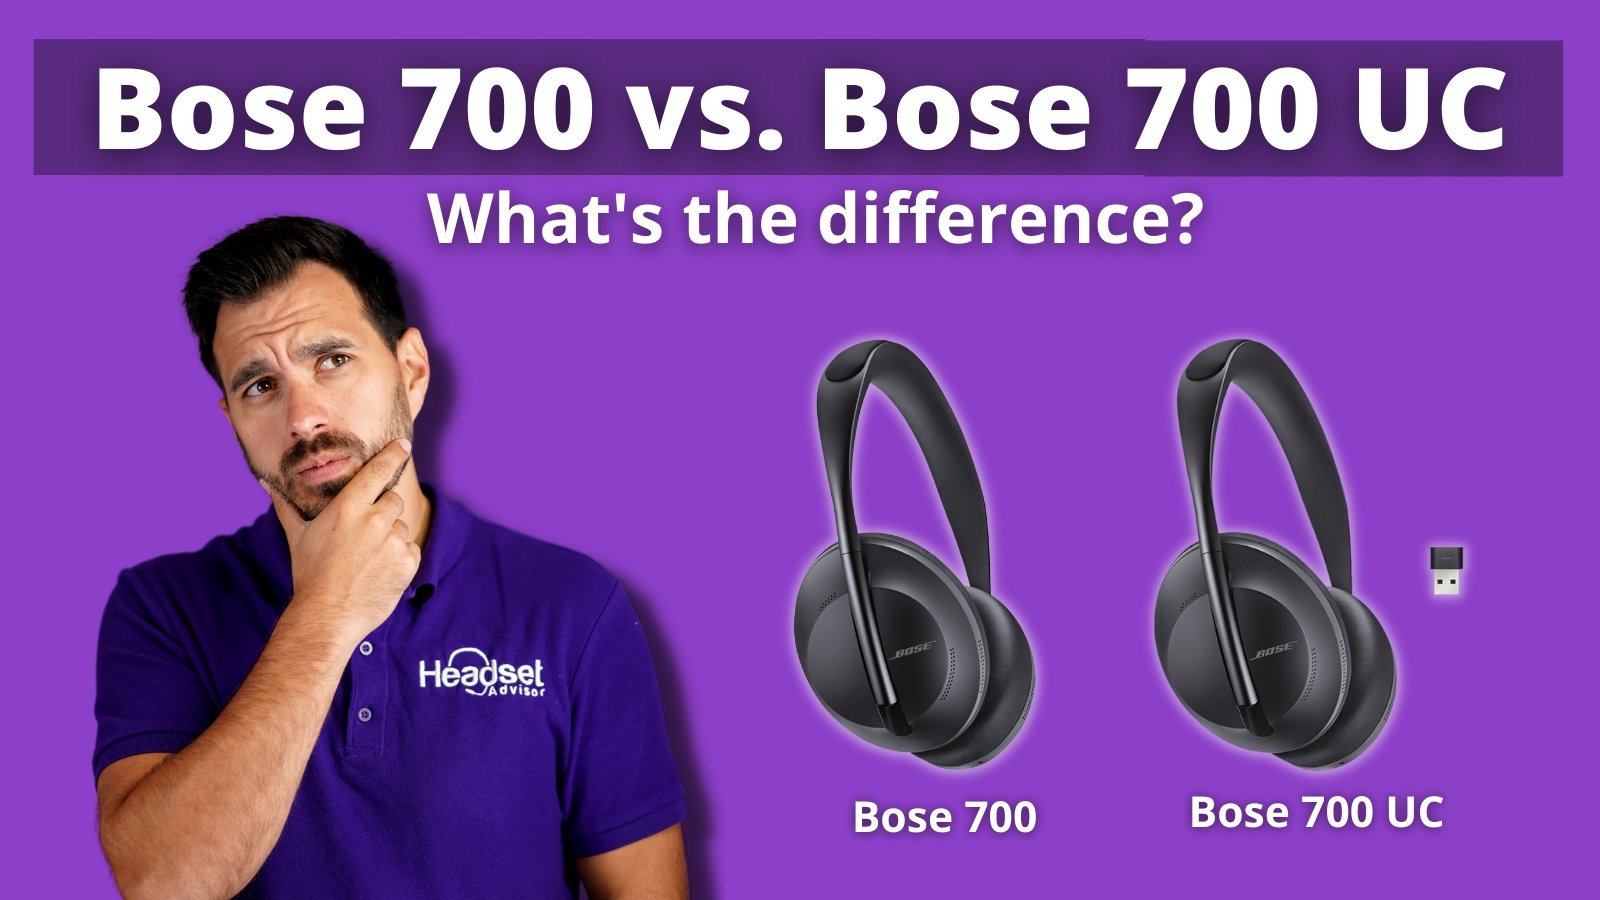 Bose 700 UC vs. Bose 700 Comparison